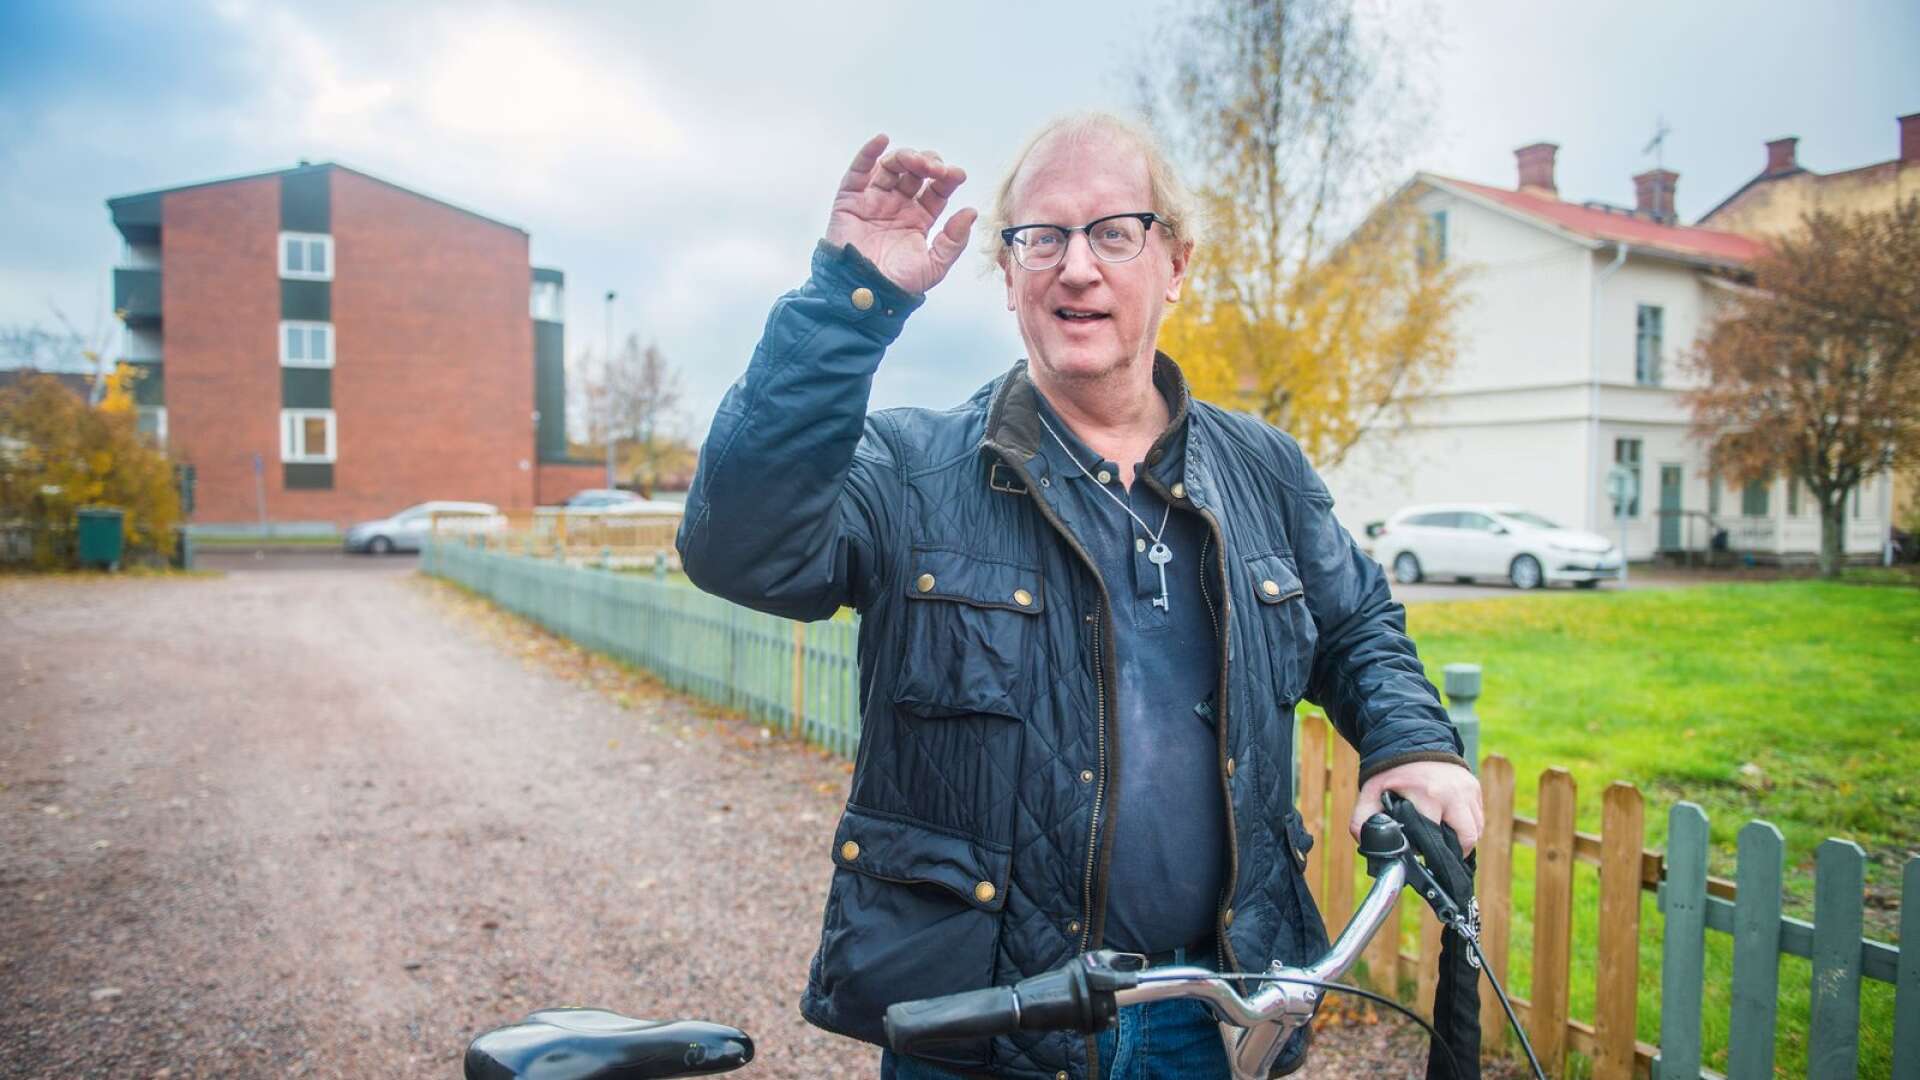 Per Halvarsson är 56 år och har bott i Kristinehamn i nästan hela sitt liv. Han trivs i staden och har tack vare pingisintresset fått många bekanta.